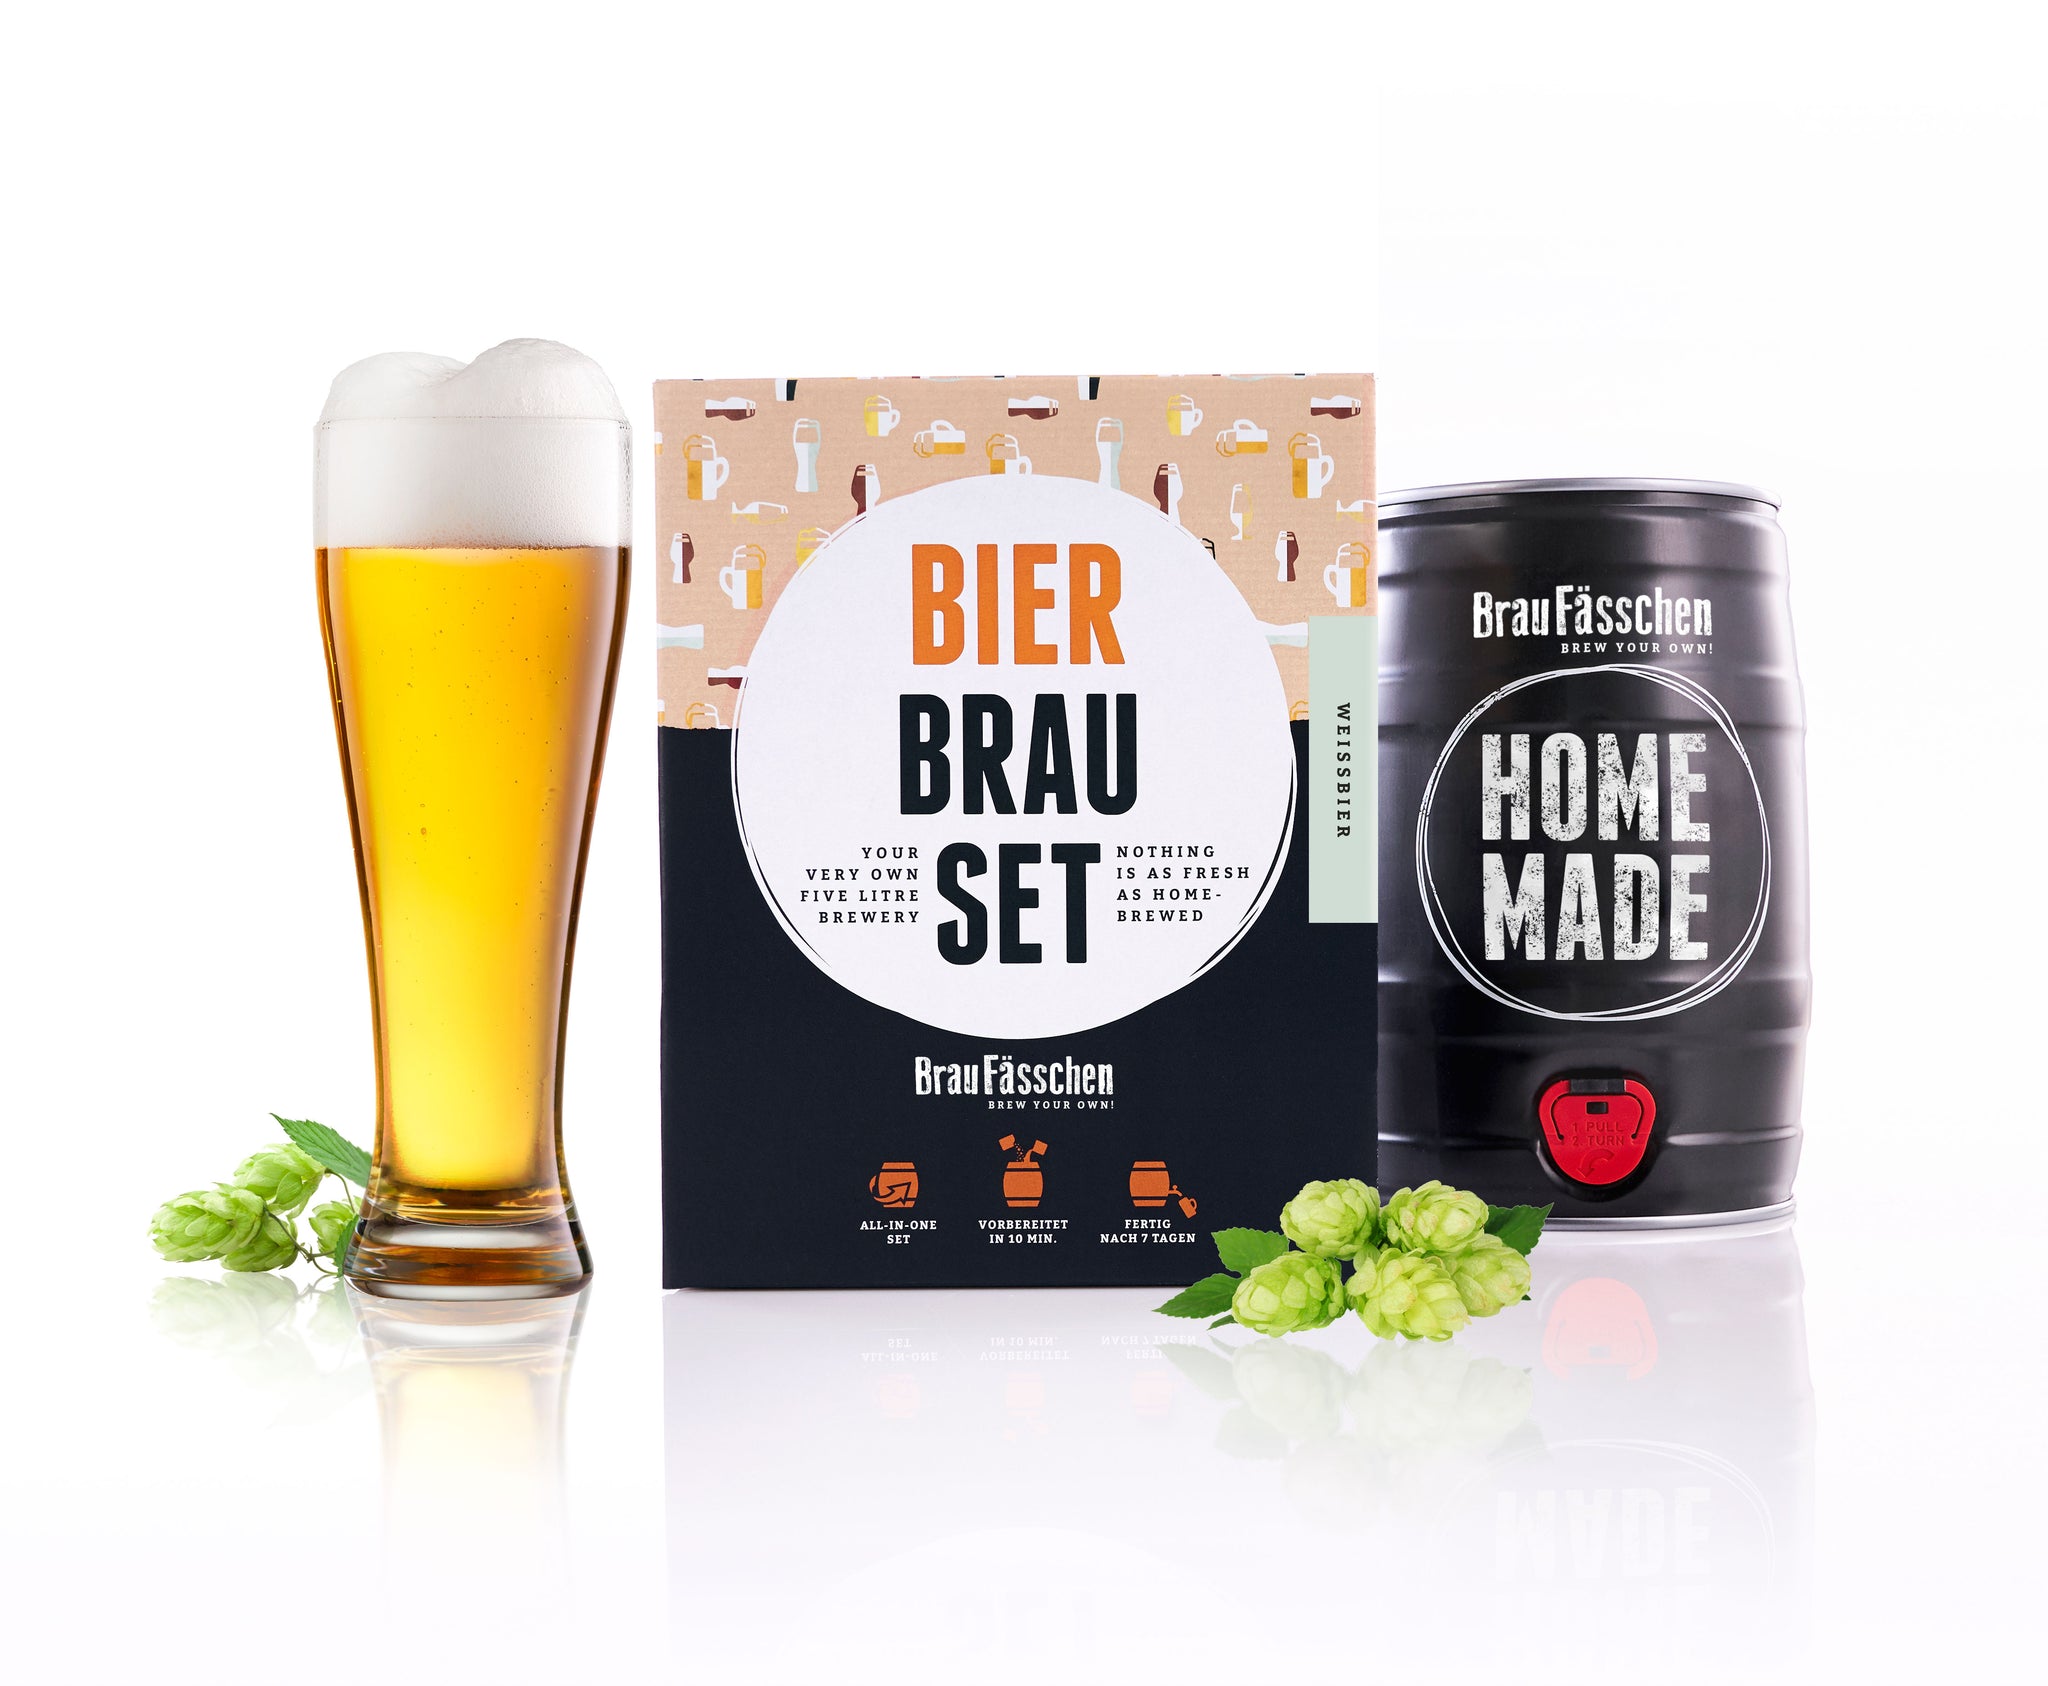 Bierbrauset Weißbier & bayerisches Bier zum selber brauen